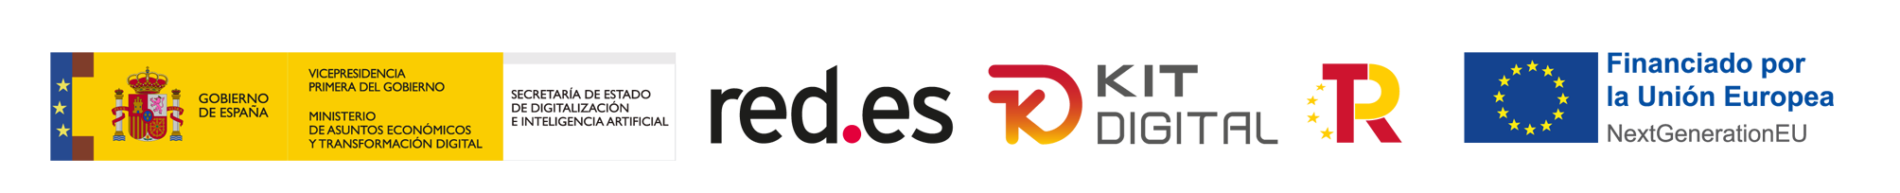 logos_kit